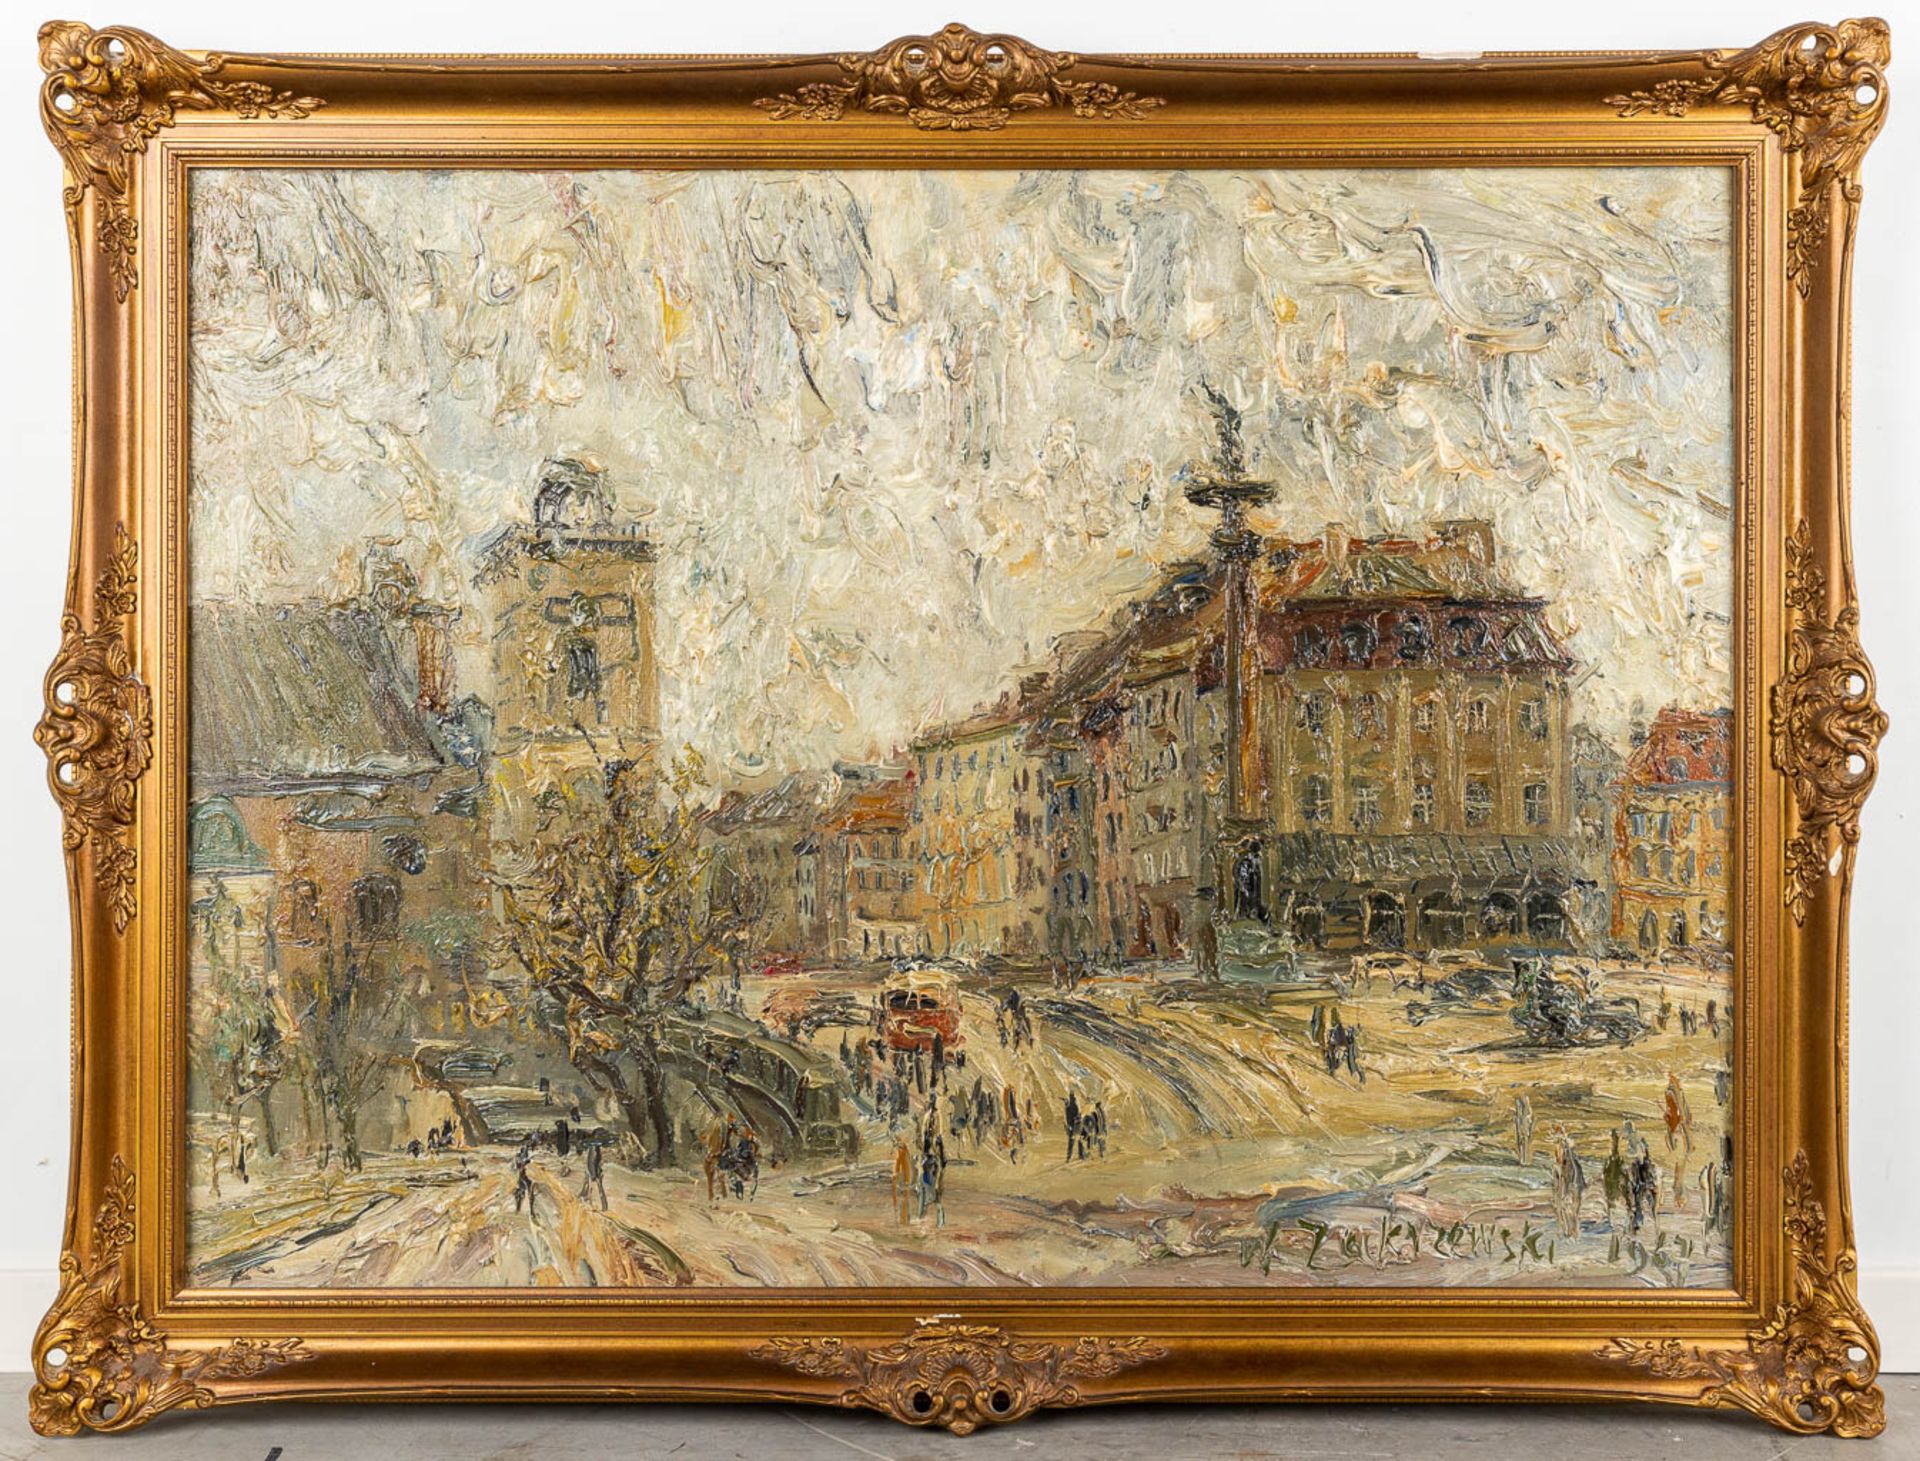 Wlodzimierz ZAKRZEWSKI (1916-1992) 'Plac Zamkowy, Warschaw' oil on canvas. 1967. (W:100 x H:72 cm) - Image 3 of 8